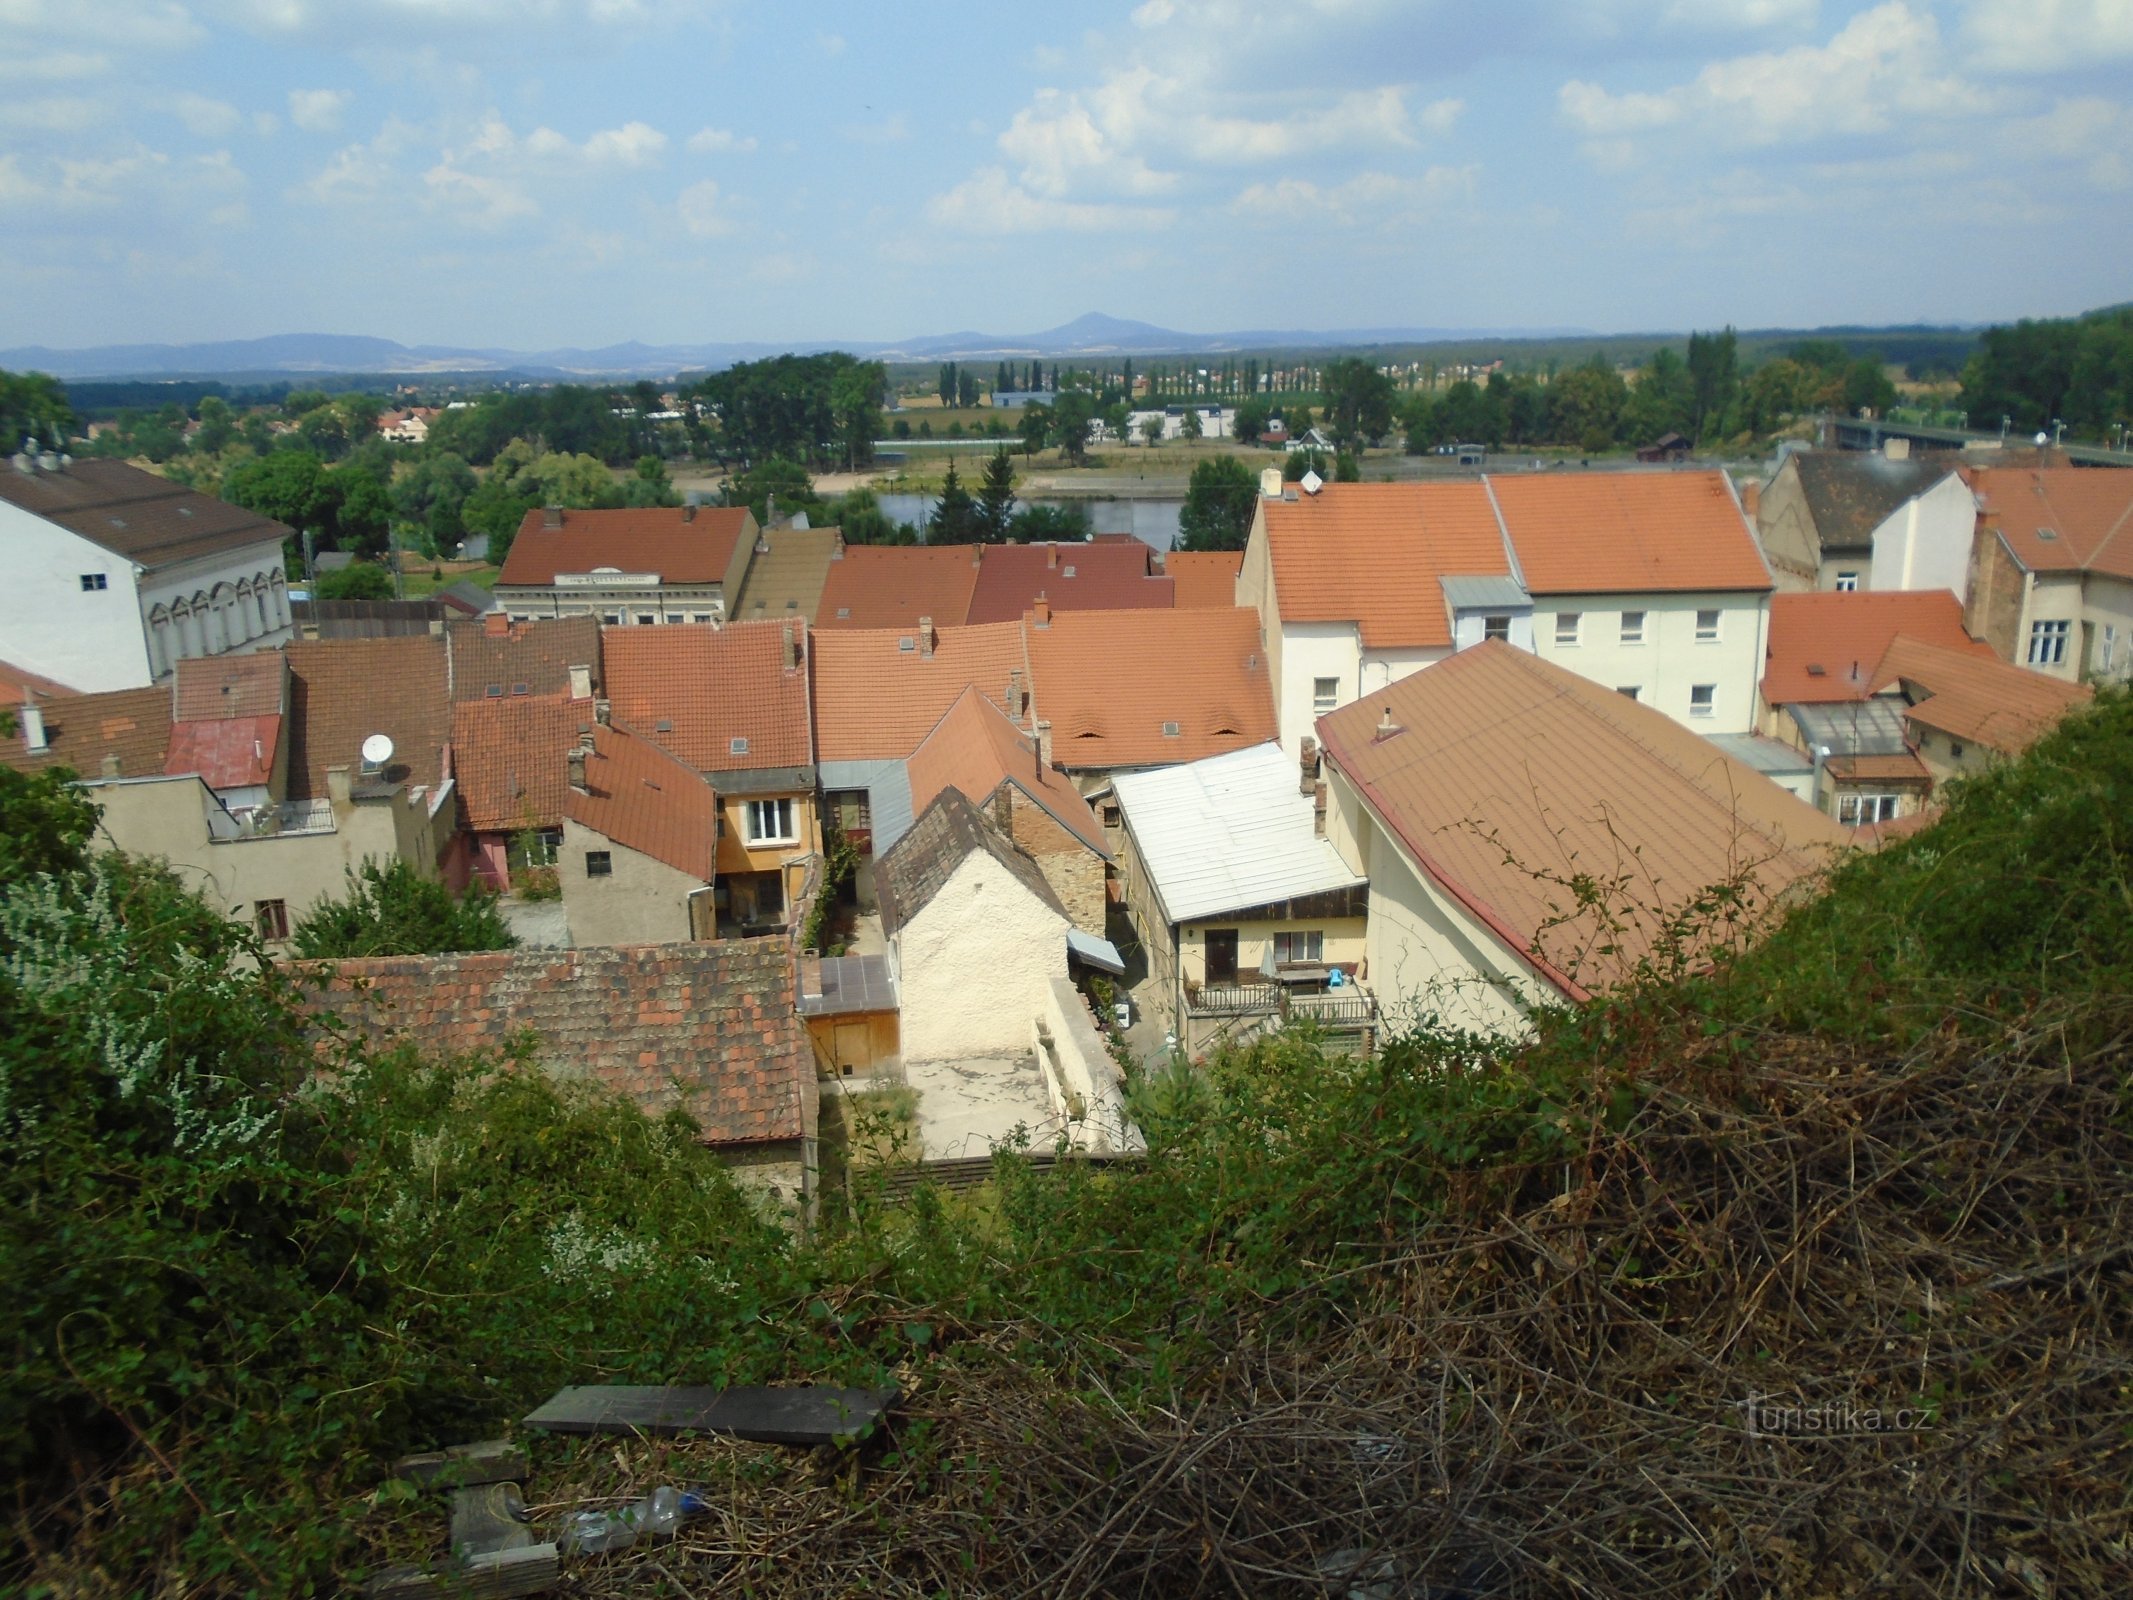 Vedere de la Hláska (Roudnice nad Labem)